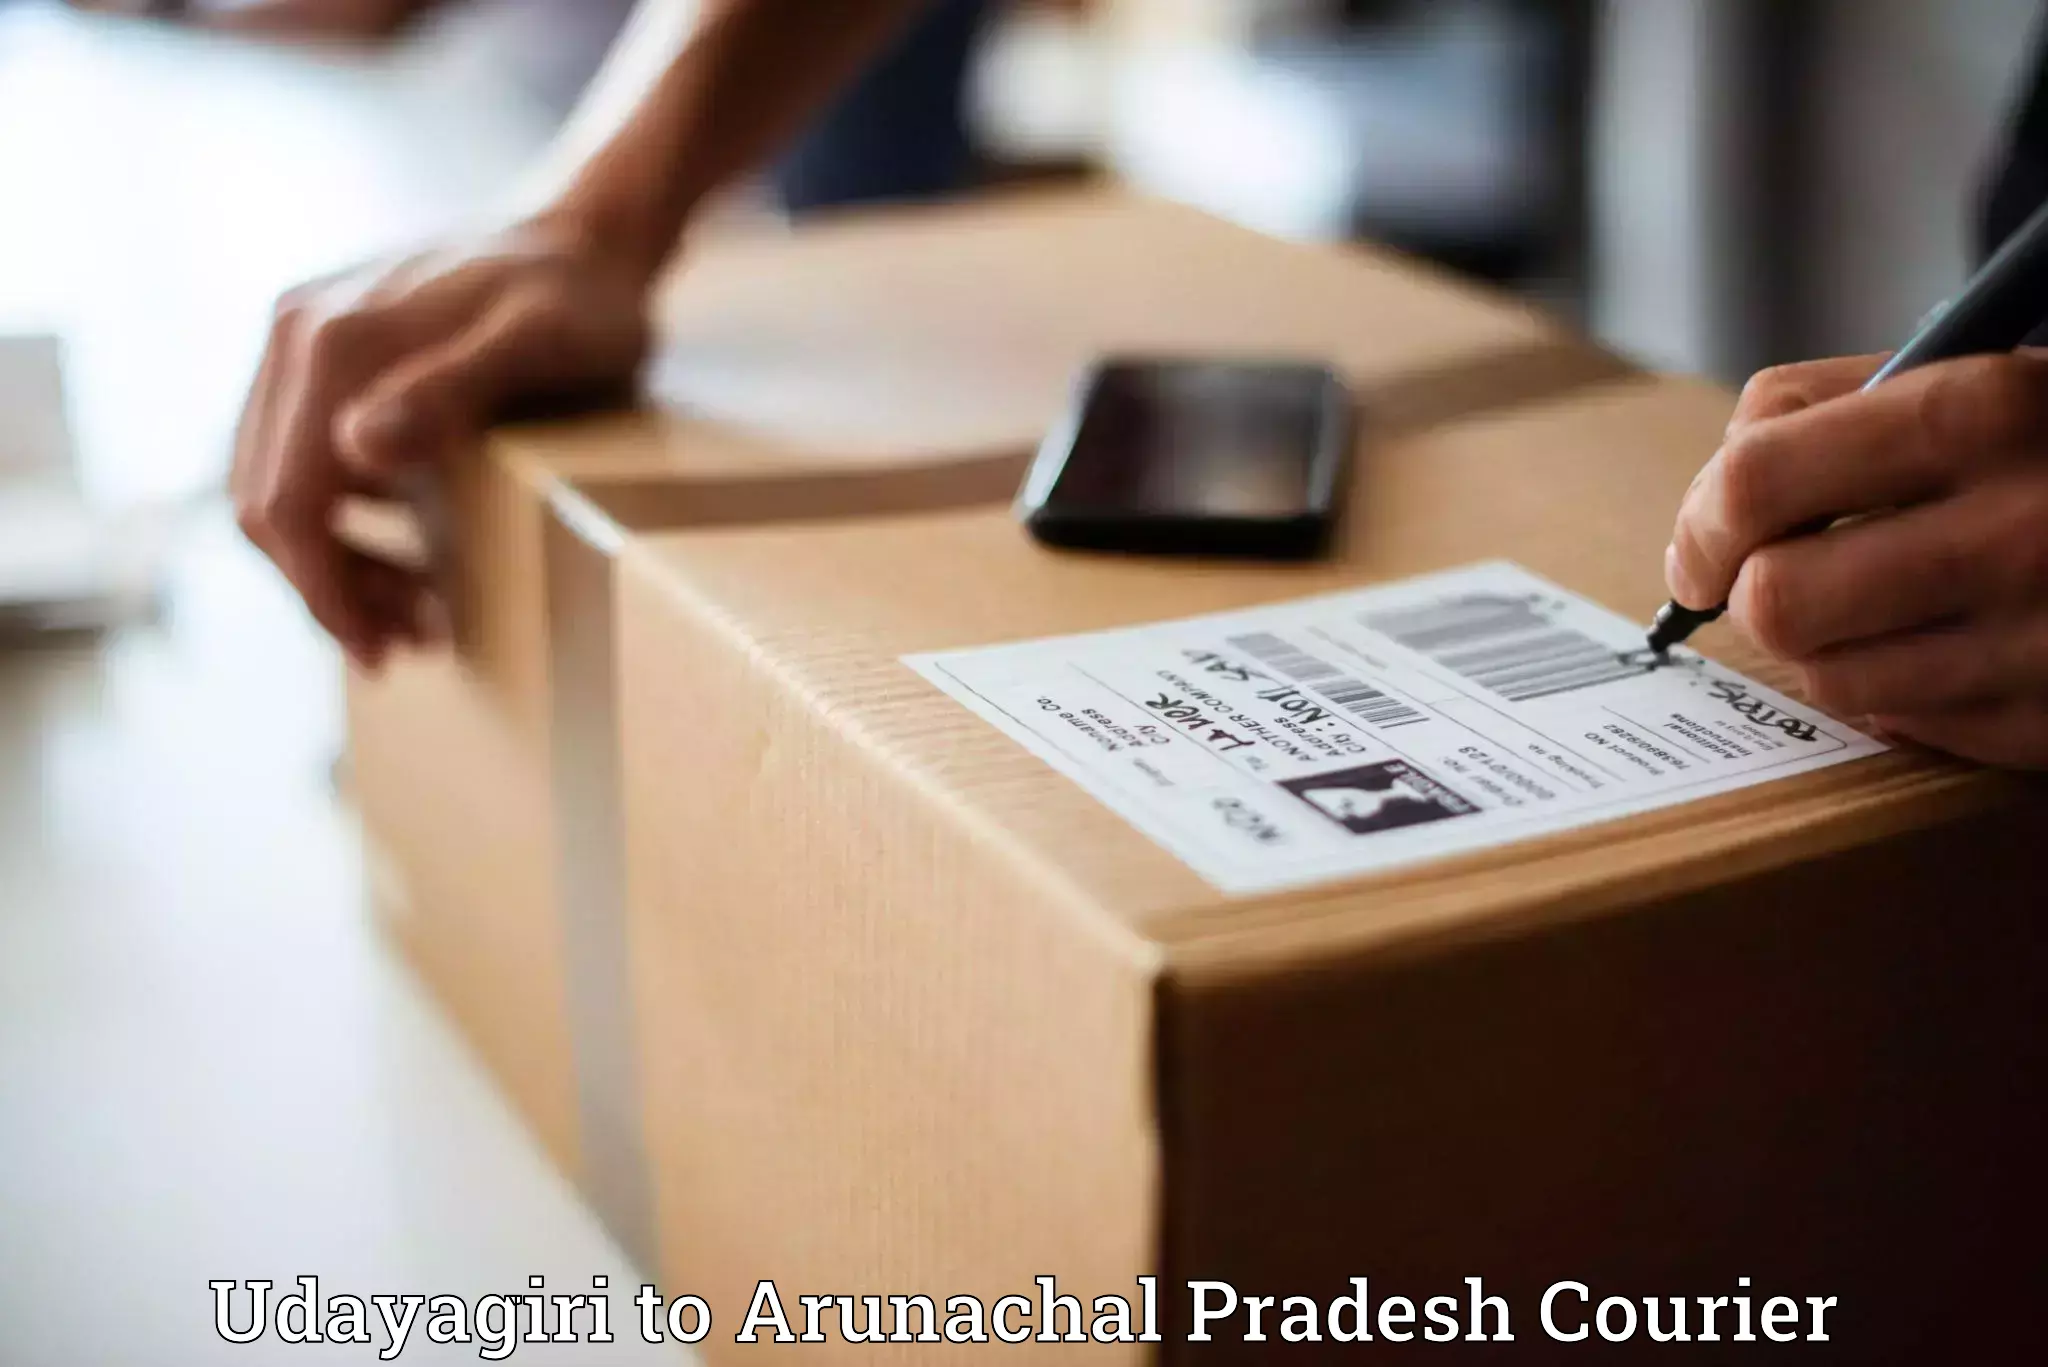 Quick courier services Udayagiri to Arunachal Pradesh